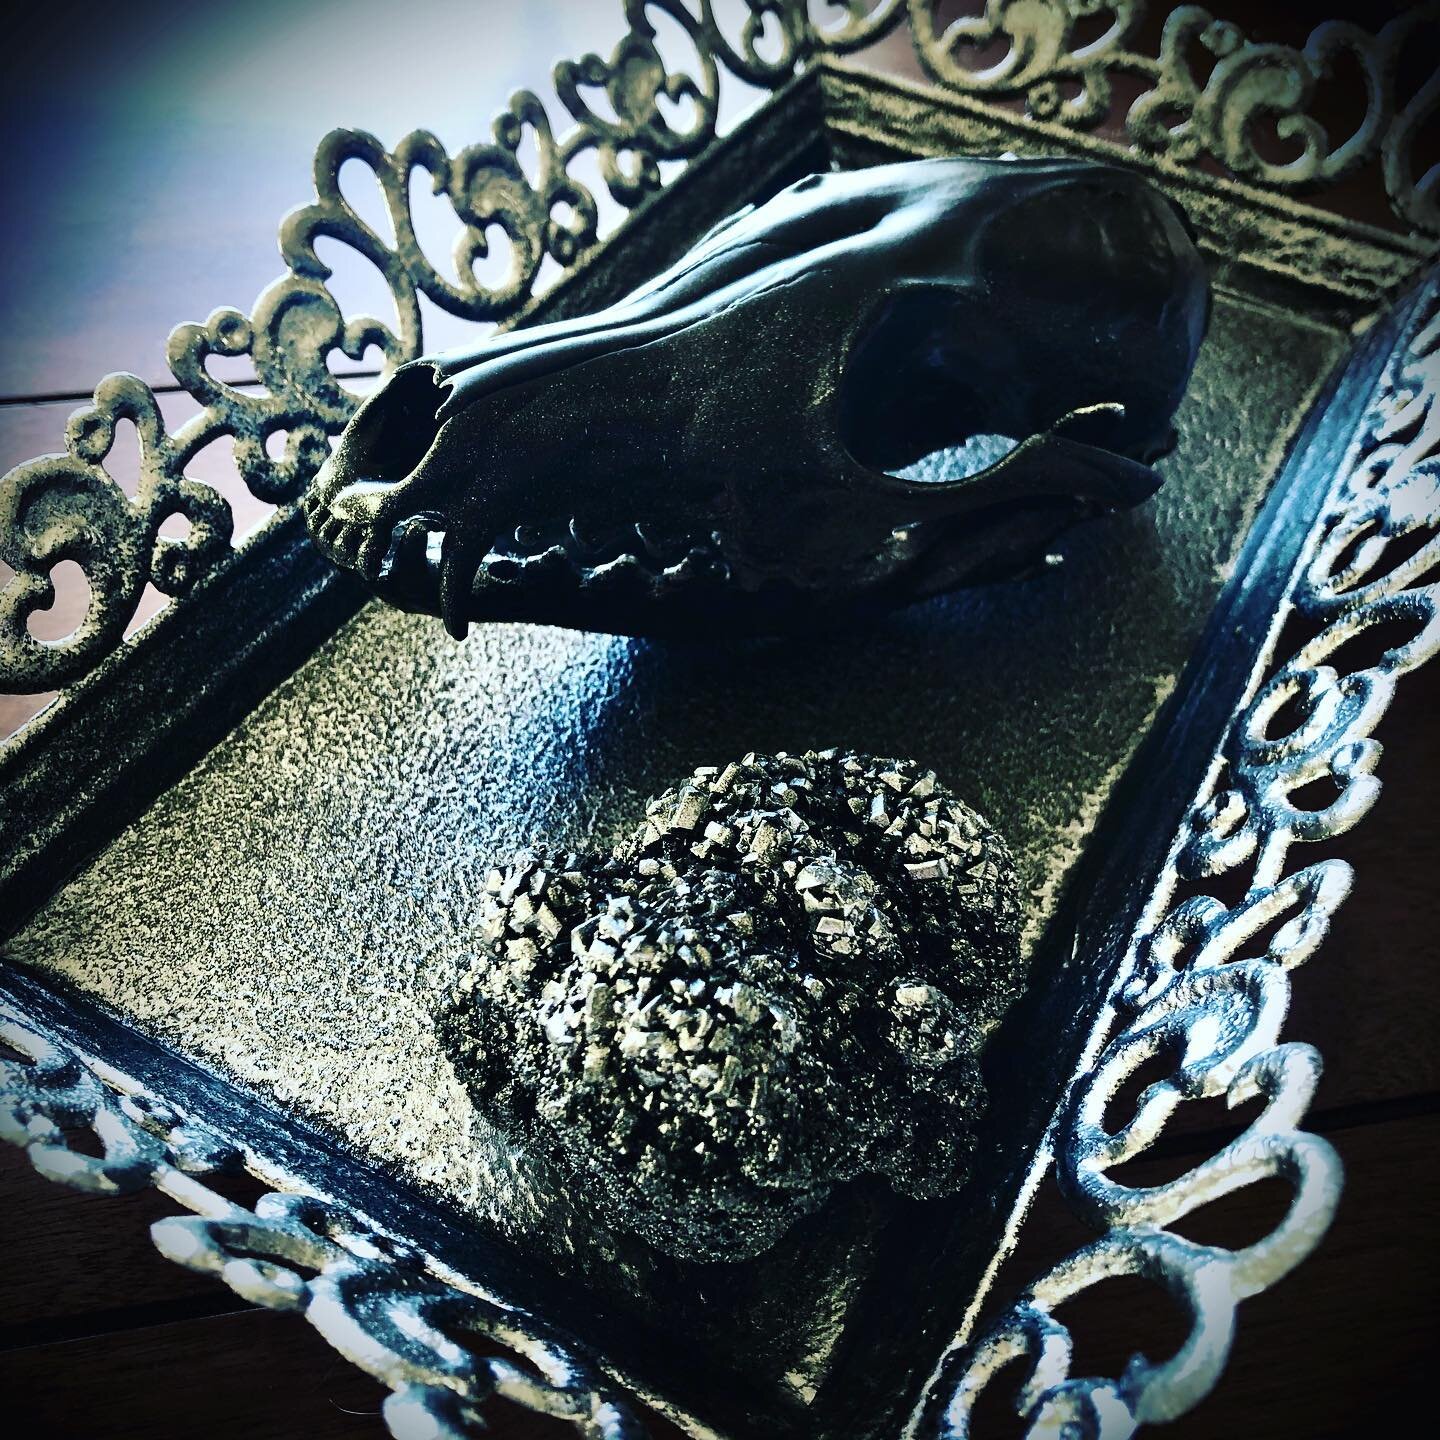 Silver and black fox skull in the making!!!! 🖤 🦊 .
.
#workinprogress #foxskull #skullartist #boraxcrystals #metaltray #thriftshopfinds #creatingart #creativesoul #bonecollector #blackandsilver #animalskull #skullart #artist #mixedmedia #northdakota